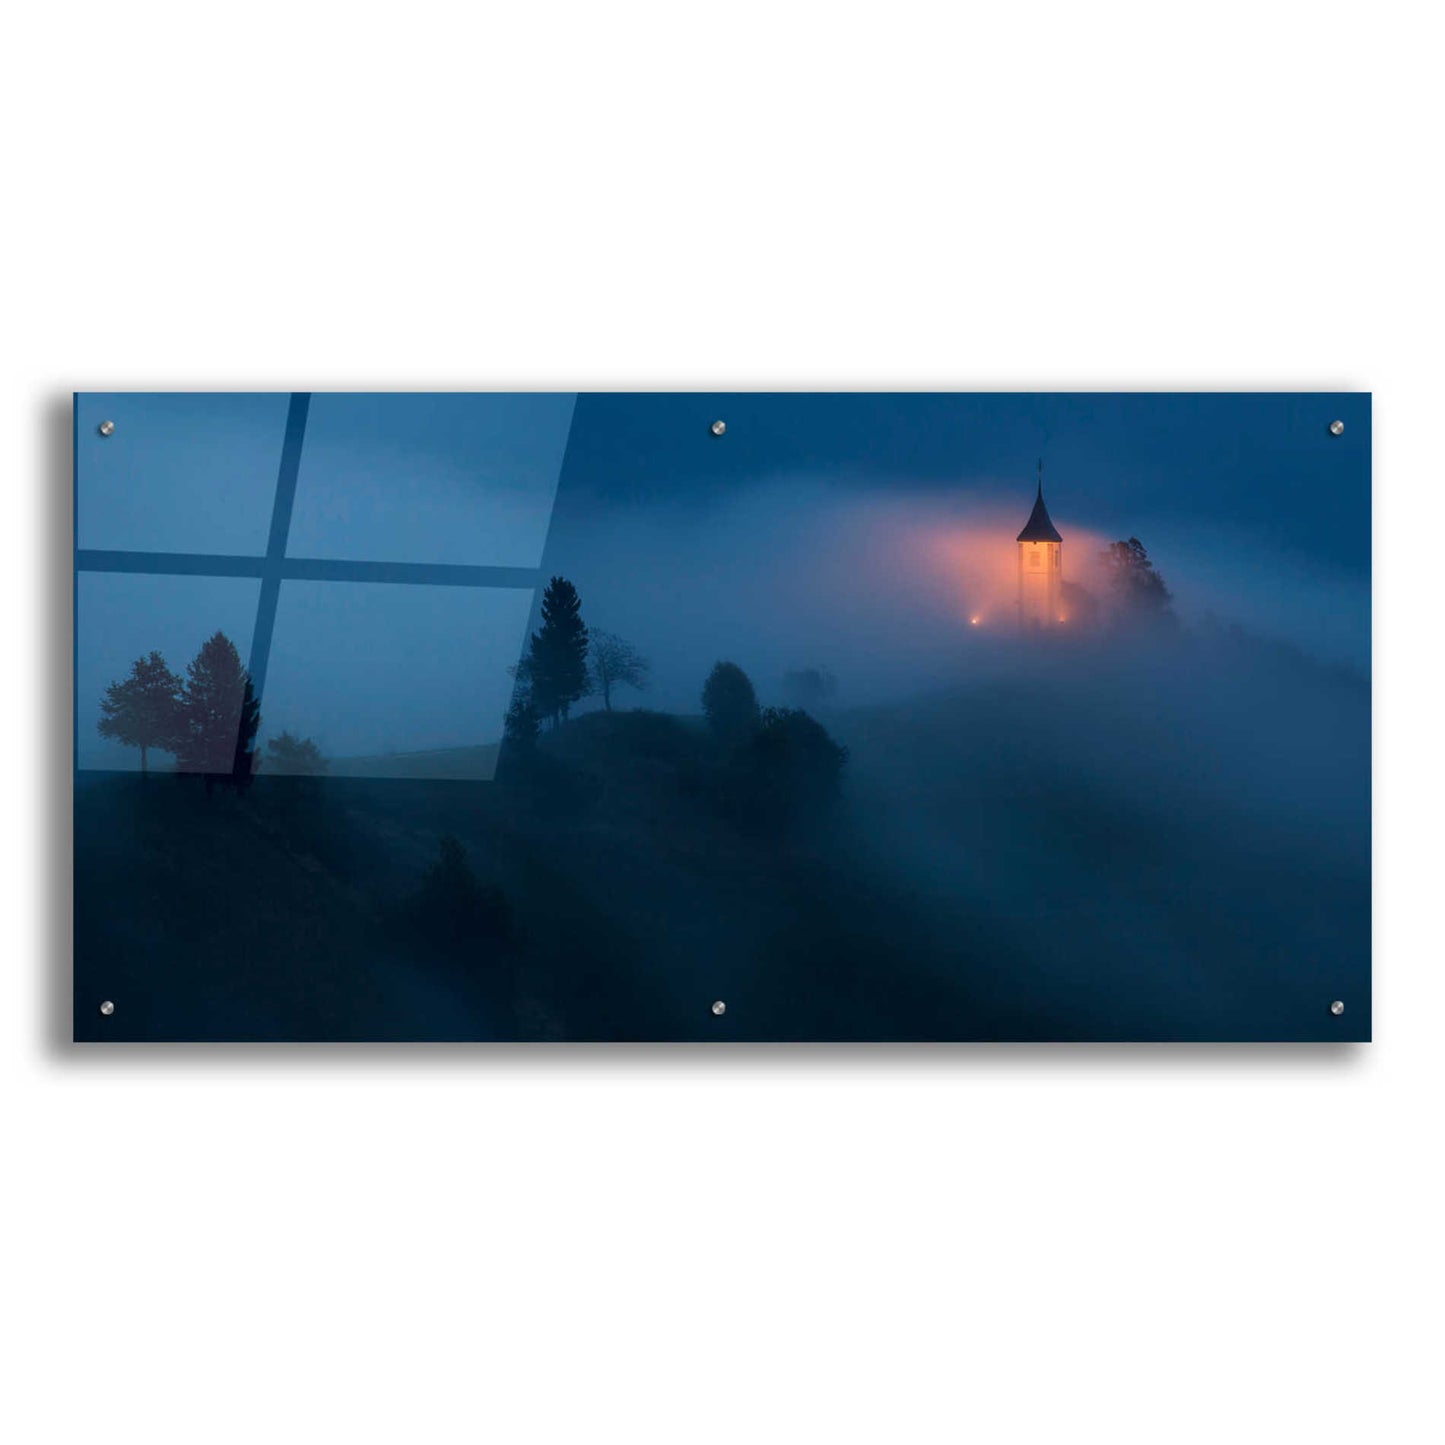 Epic Art 'Fog Rolls In' by Larry Malvin, Acrylic Glass Wall Art,48x24